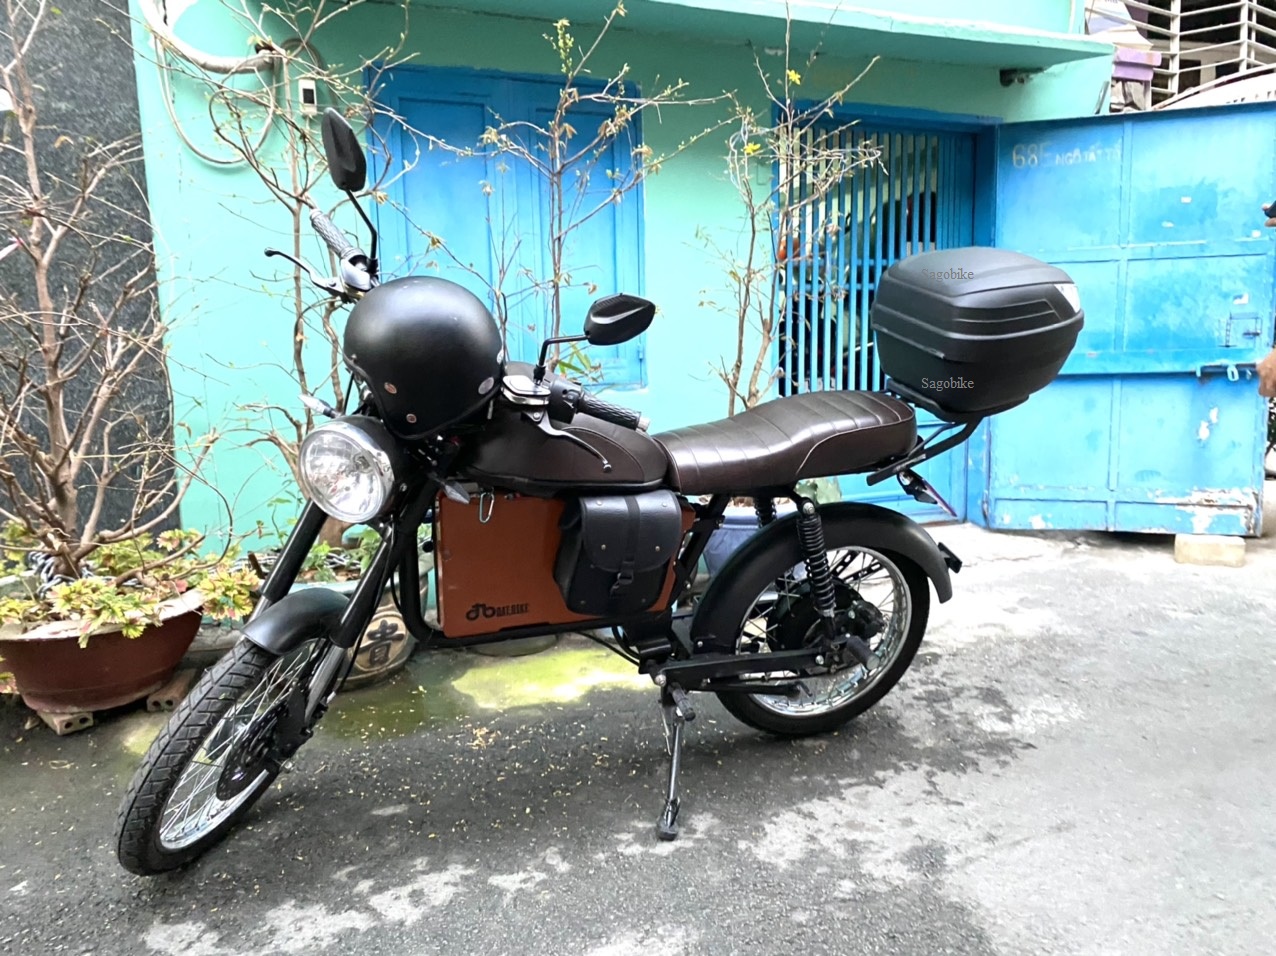 Hình ảnh Thùng Givi B27NT gắn cho xe máy điện Datbike Weaver 200, bộ thùng bao gồm baga gắn cho Datbike